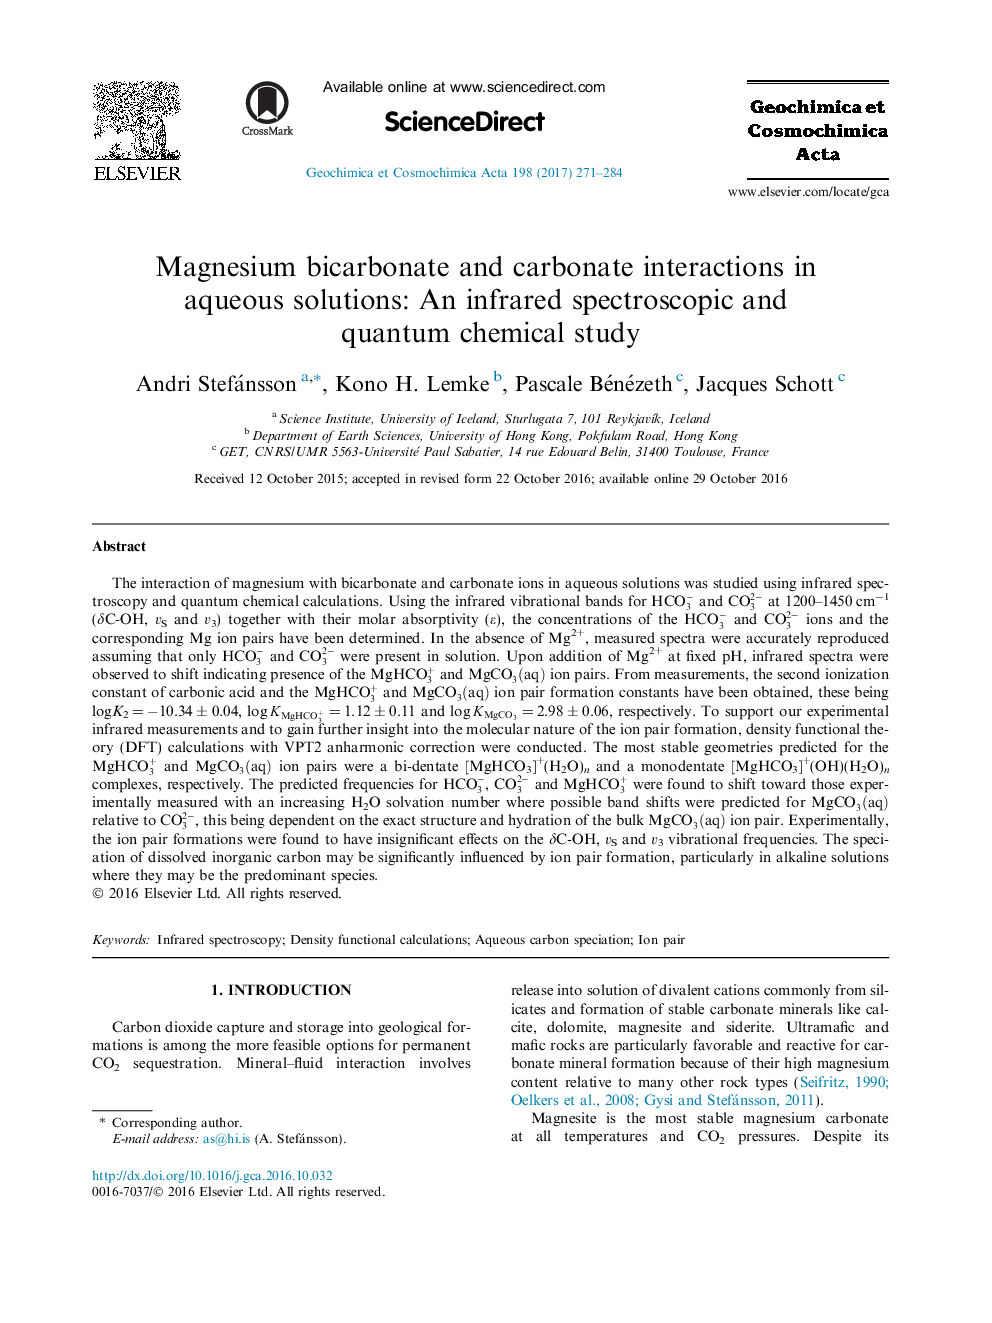 تعامل بی کربنات منیزیم و کربنات در محلول های آبی: یک مطالعه شیمیایی اسپکتروسکوپی مادون قرمز و شیمیایی کوانتومی